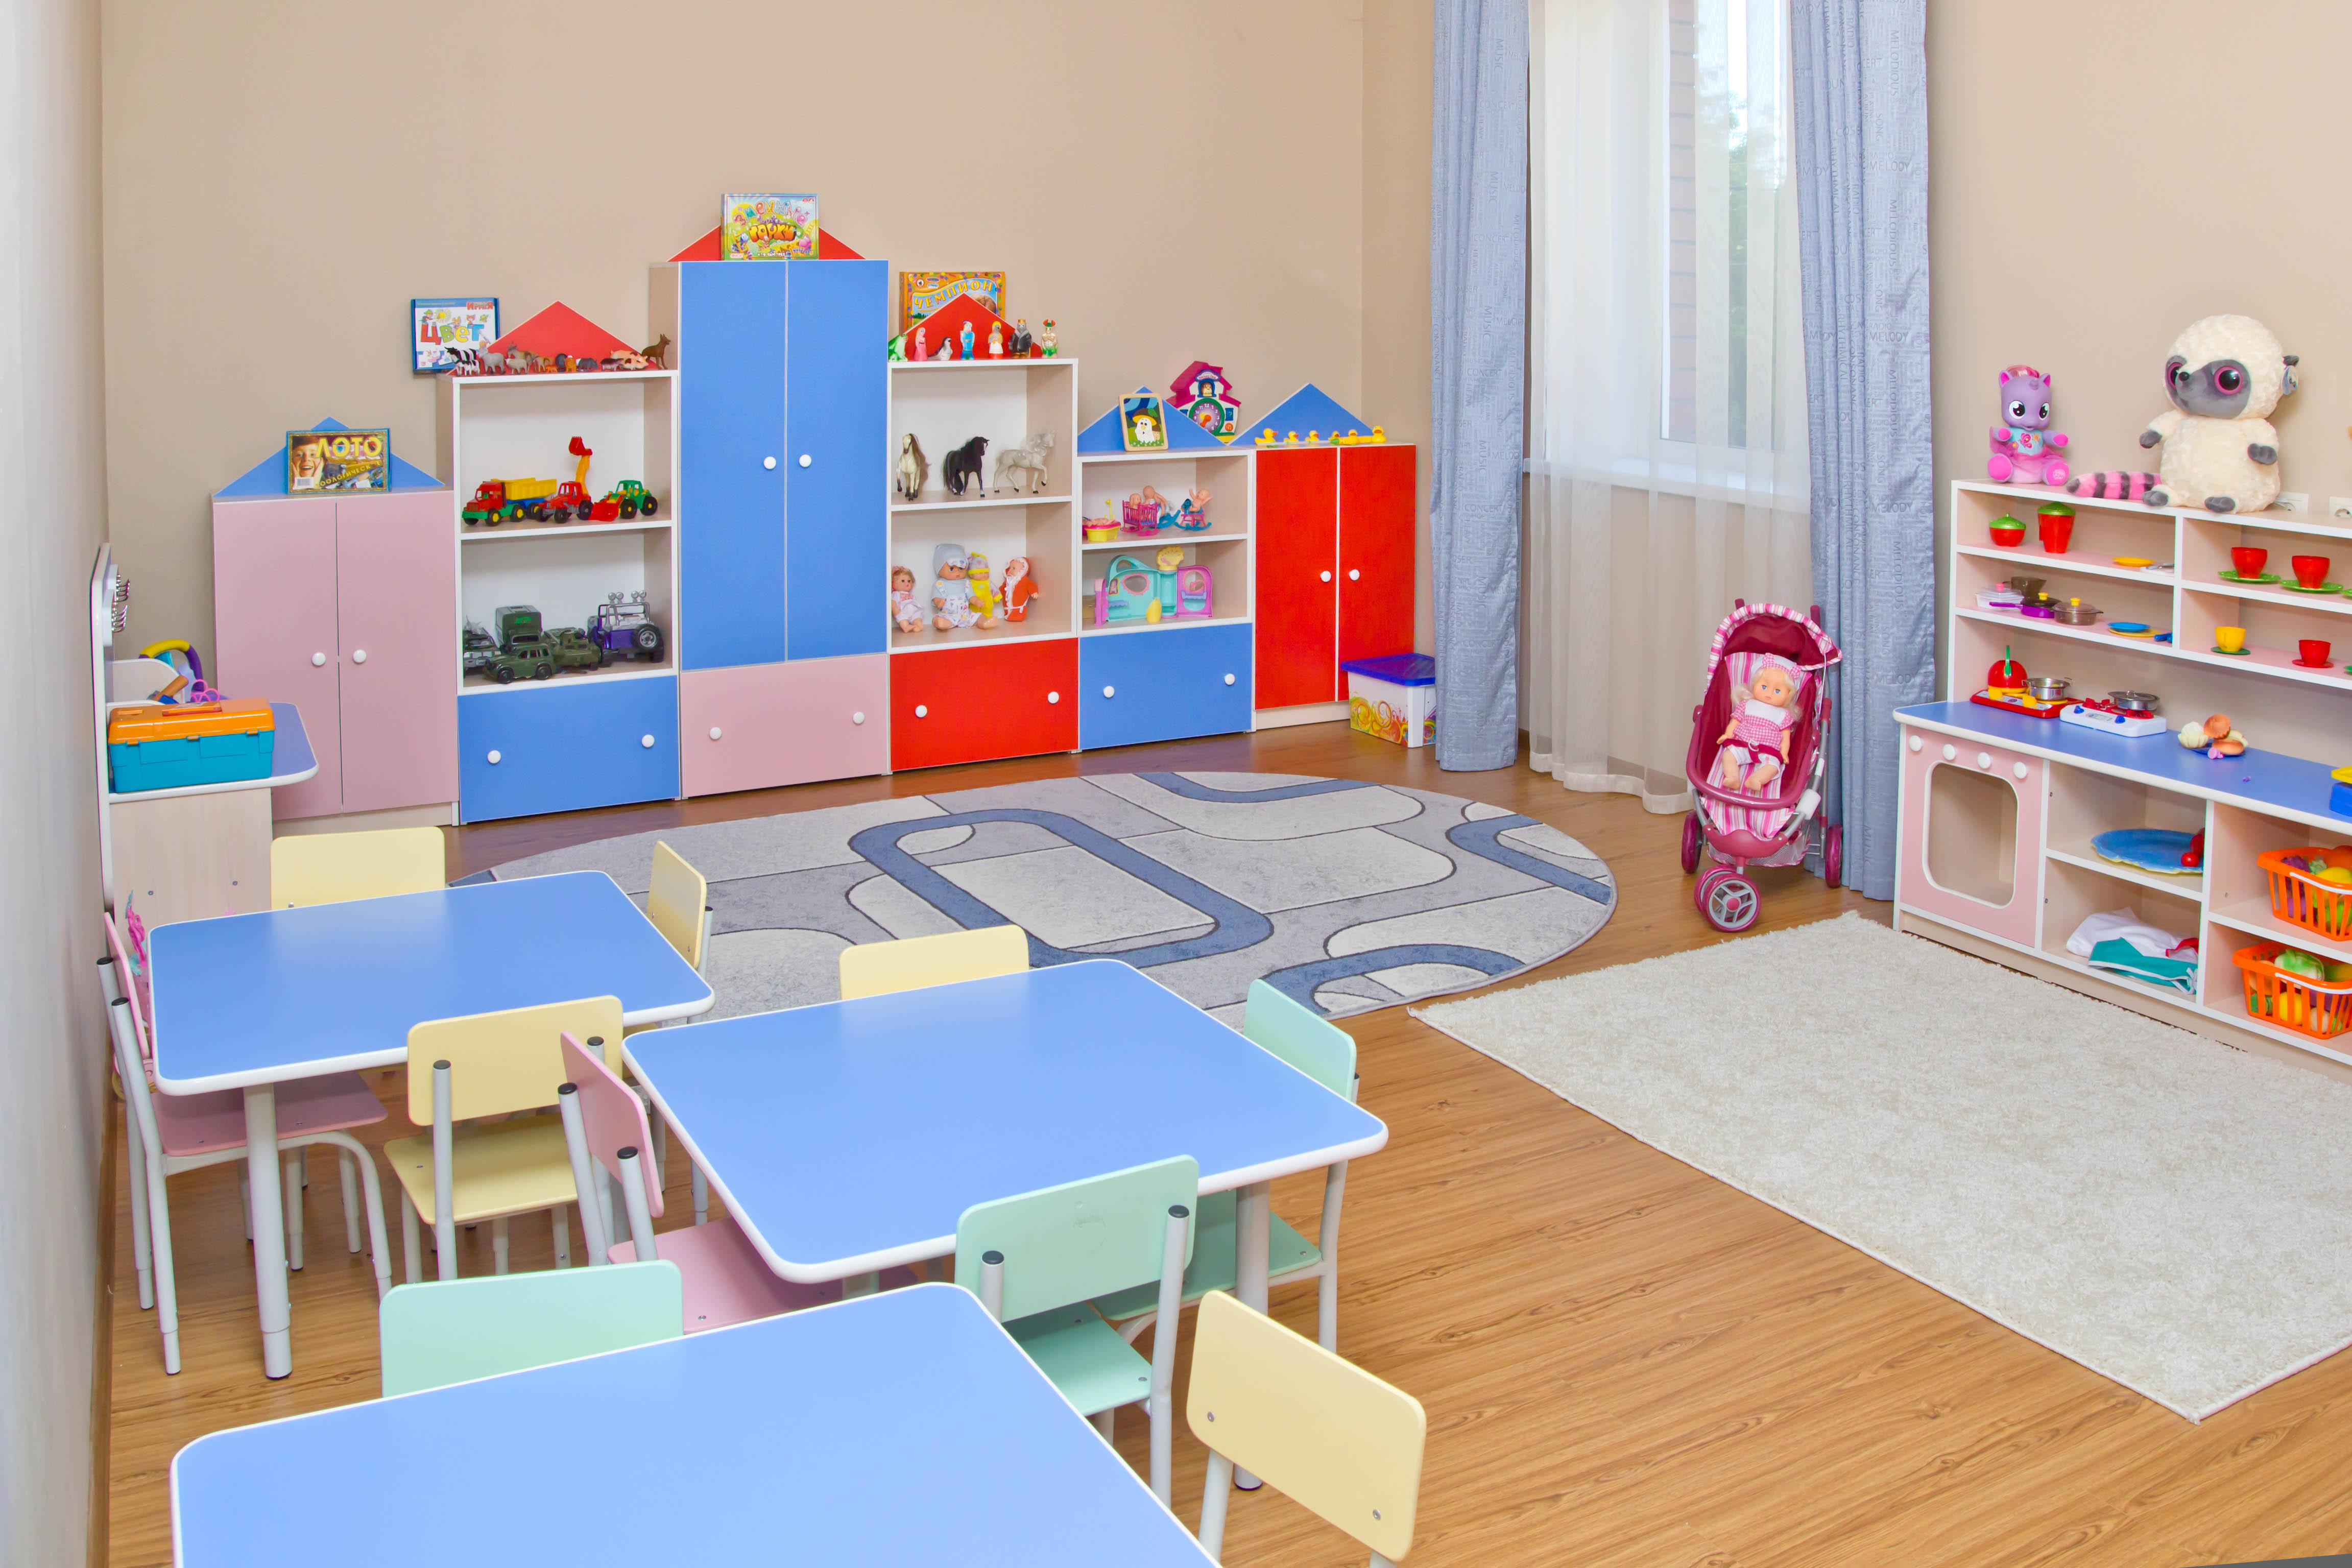 Сайт детской мебели для детских садов. Мебель для детского сада. Мебель для группы детского сада. Детская мебель для детского сада. Мебель для детей в детском саду.